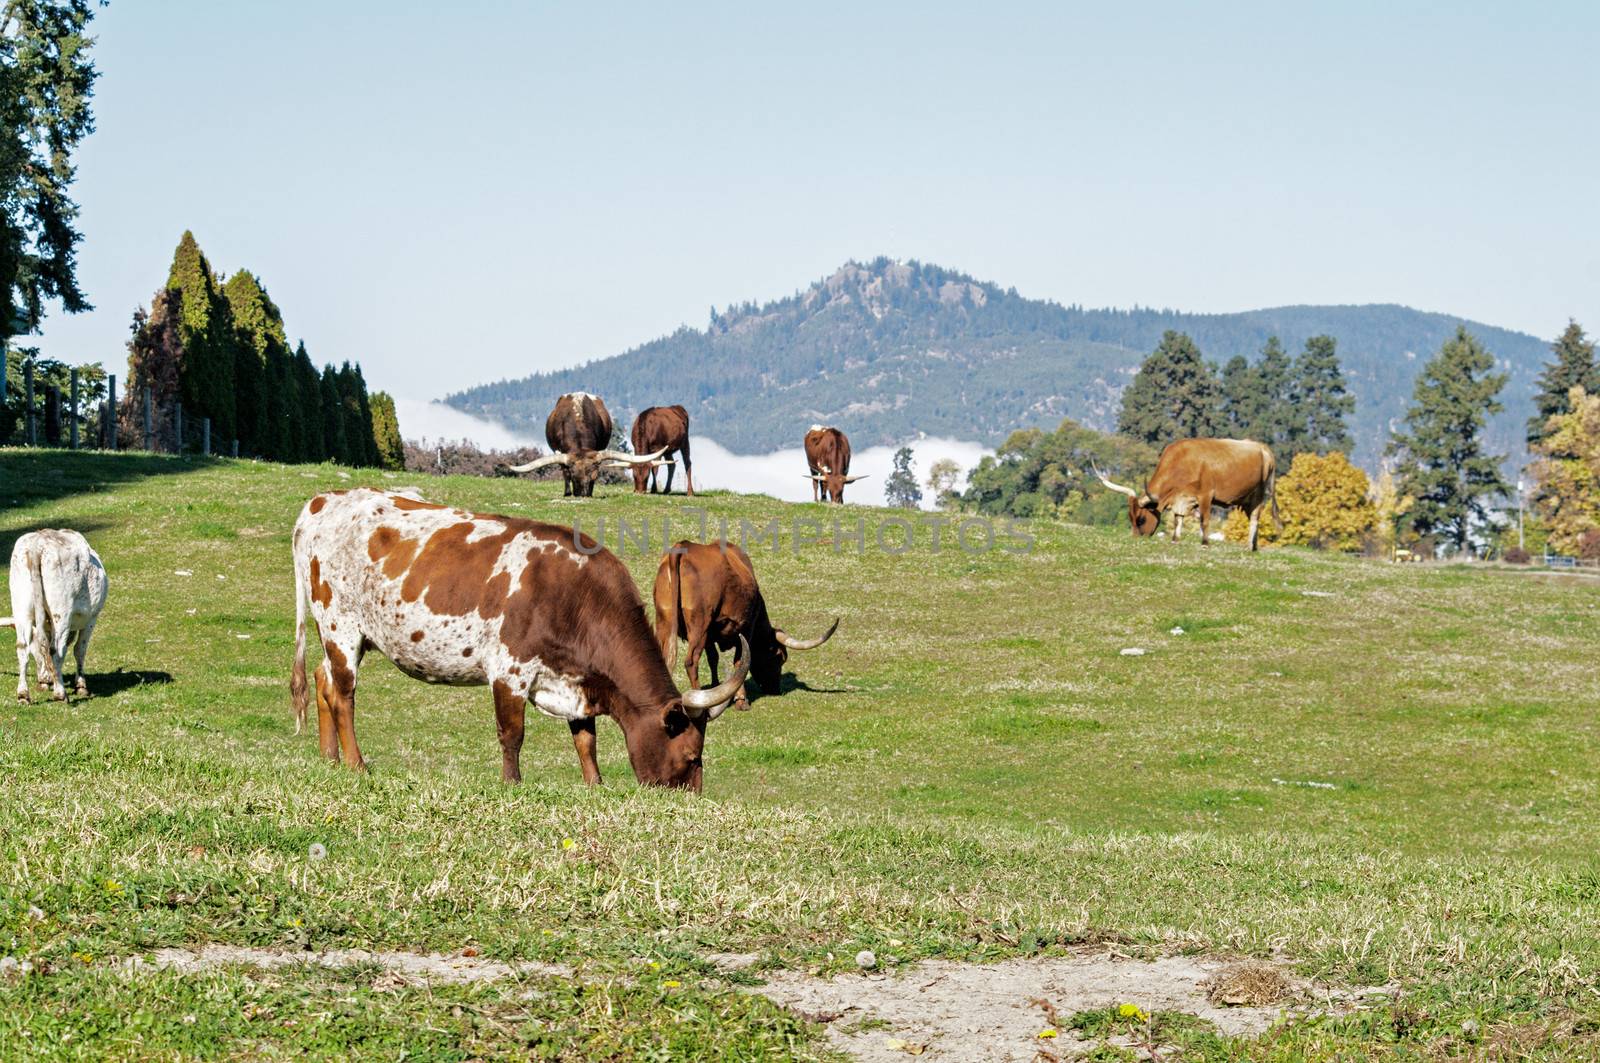 Longhorn Cattle grazing on the hillside near Kelowna